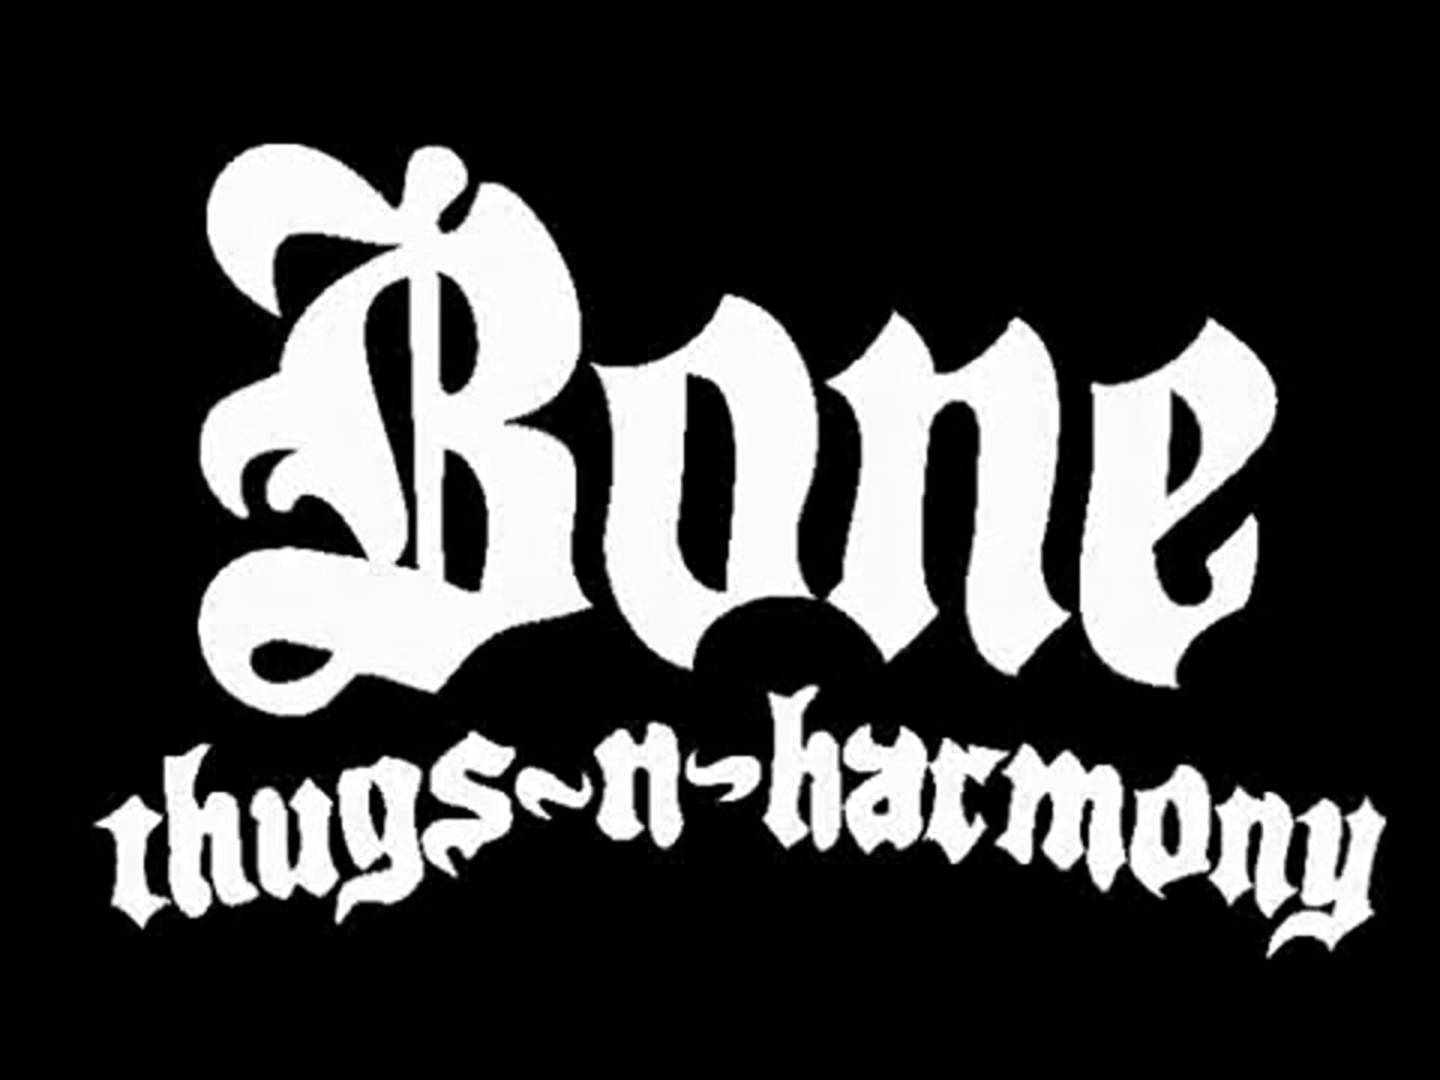 Bones n harmony. Bone Thugs-n-Harmony. Thugs. Фото Bone Thug n Harmony. Bone Thugs & Harmony BTNHRESSURECTION.